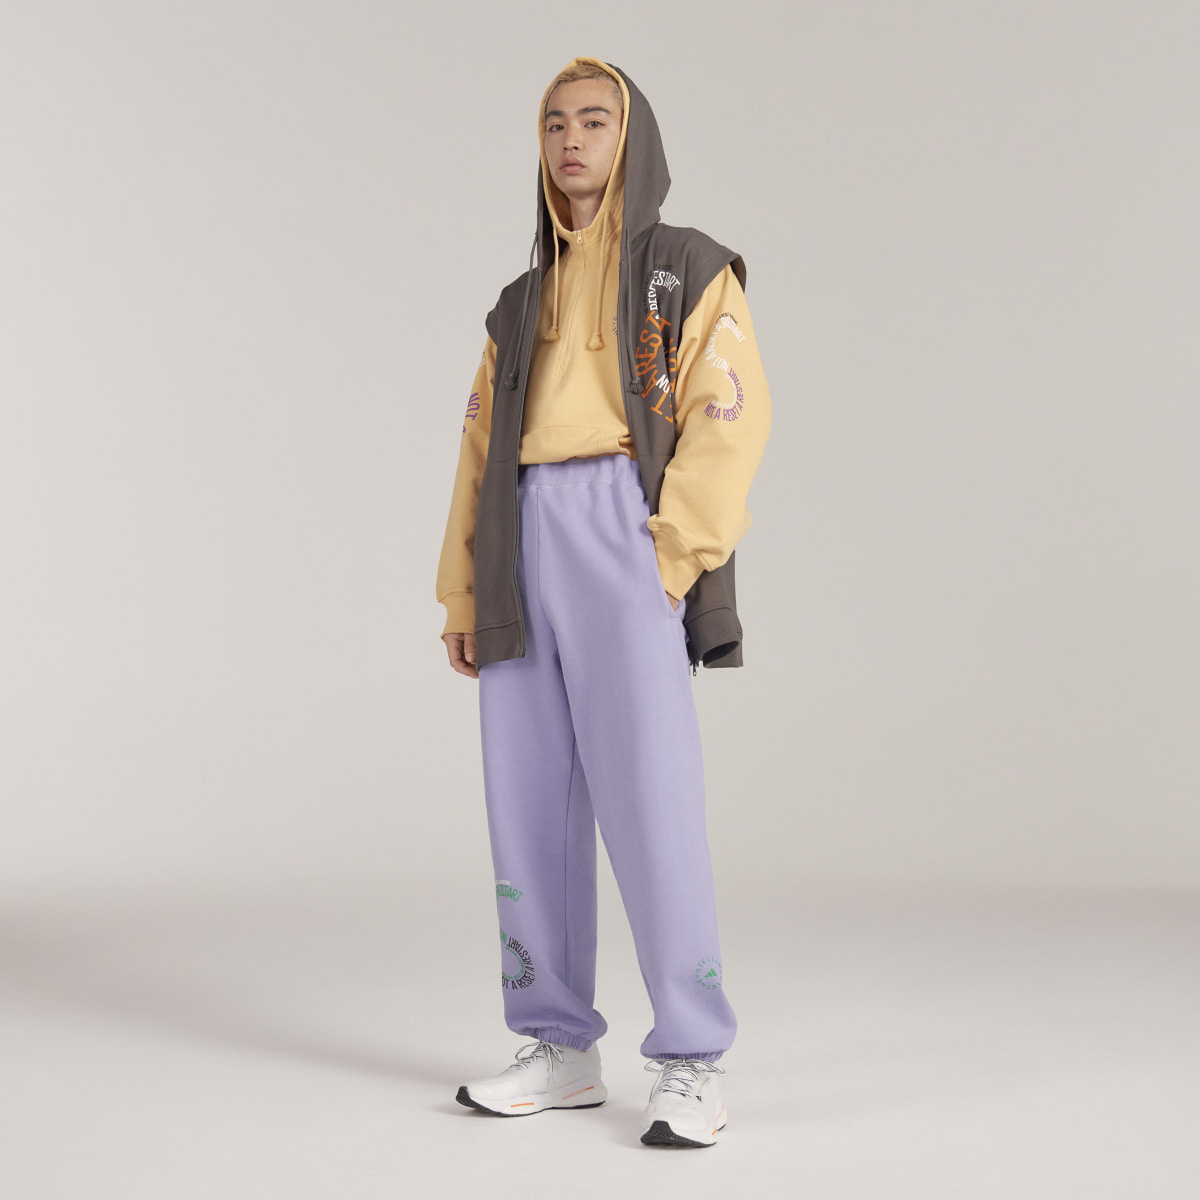 Adidas by Stella McCartney Pull On- Gender Neutral. 9